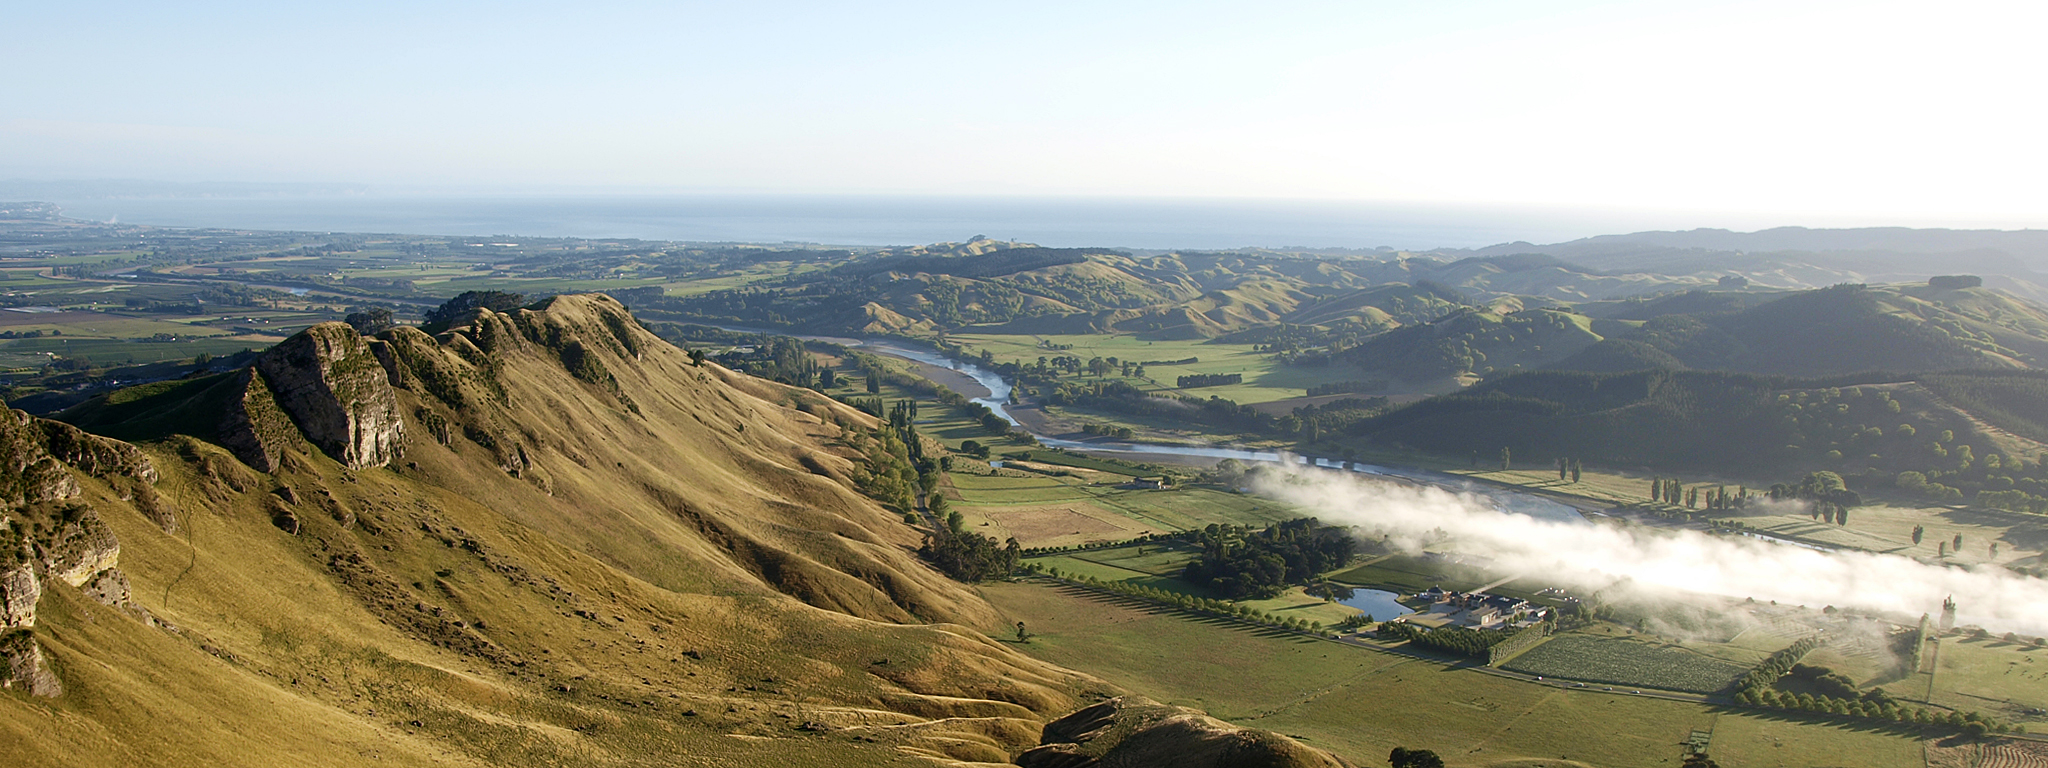 Tukituki River - Te Mata Range